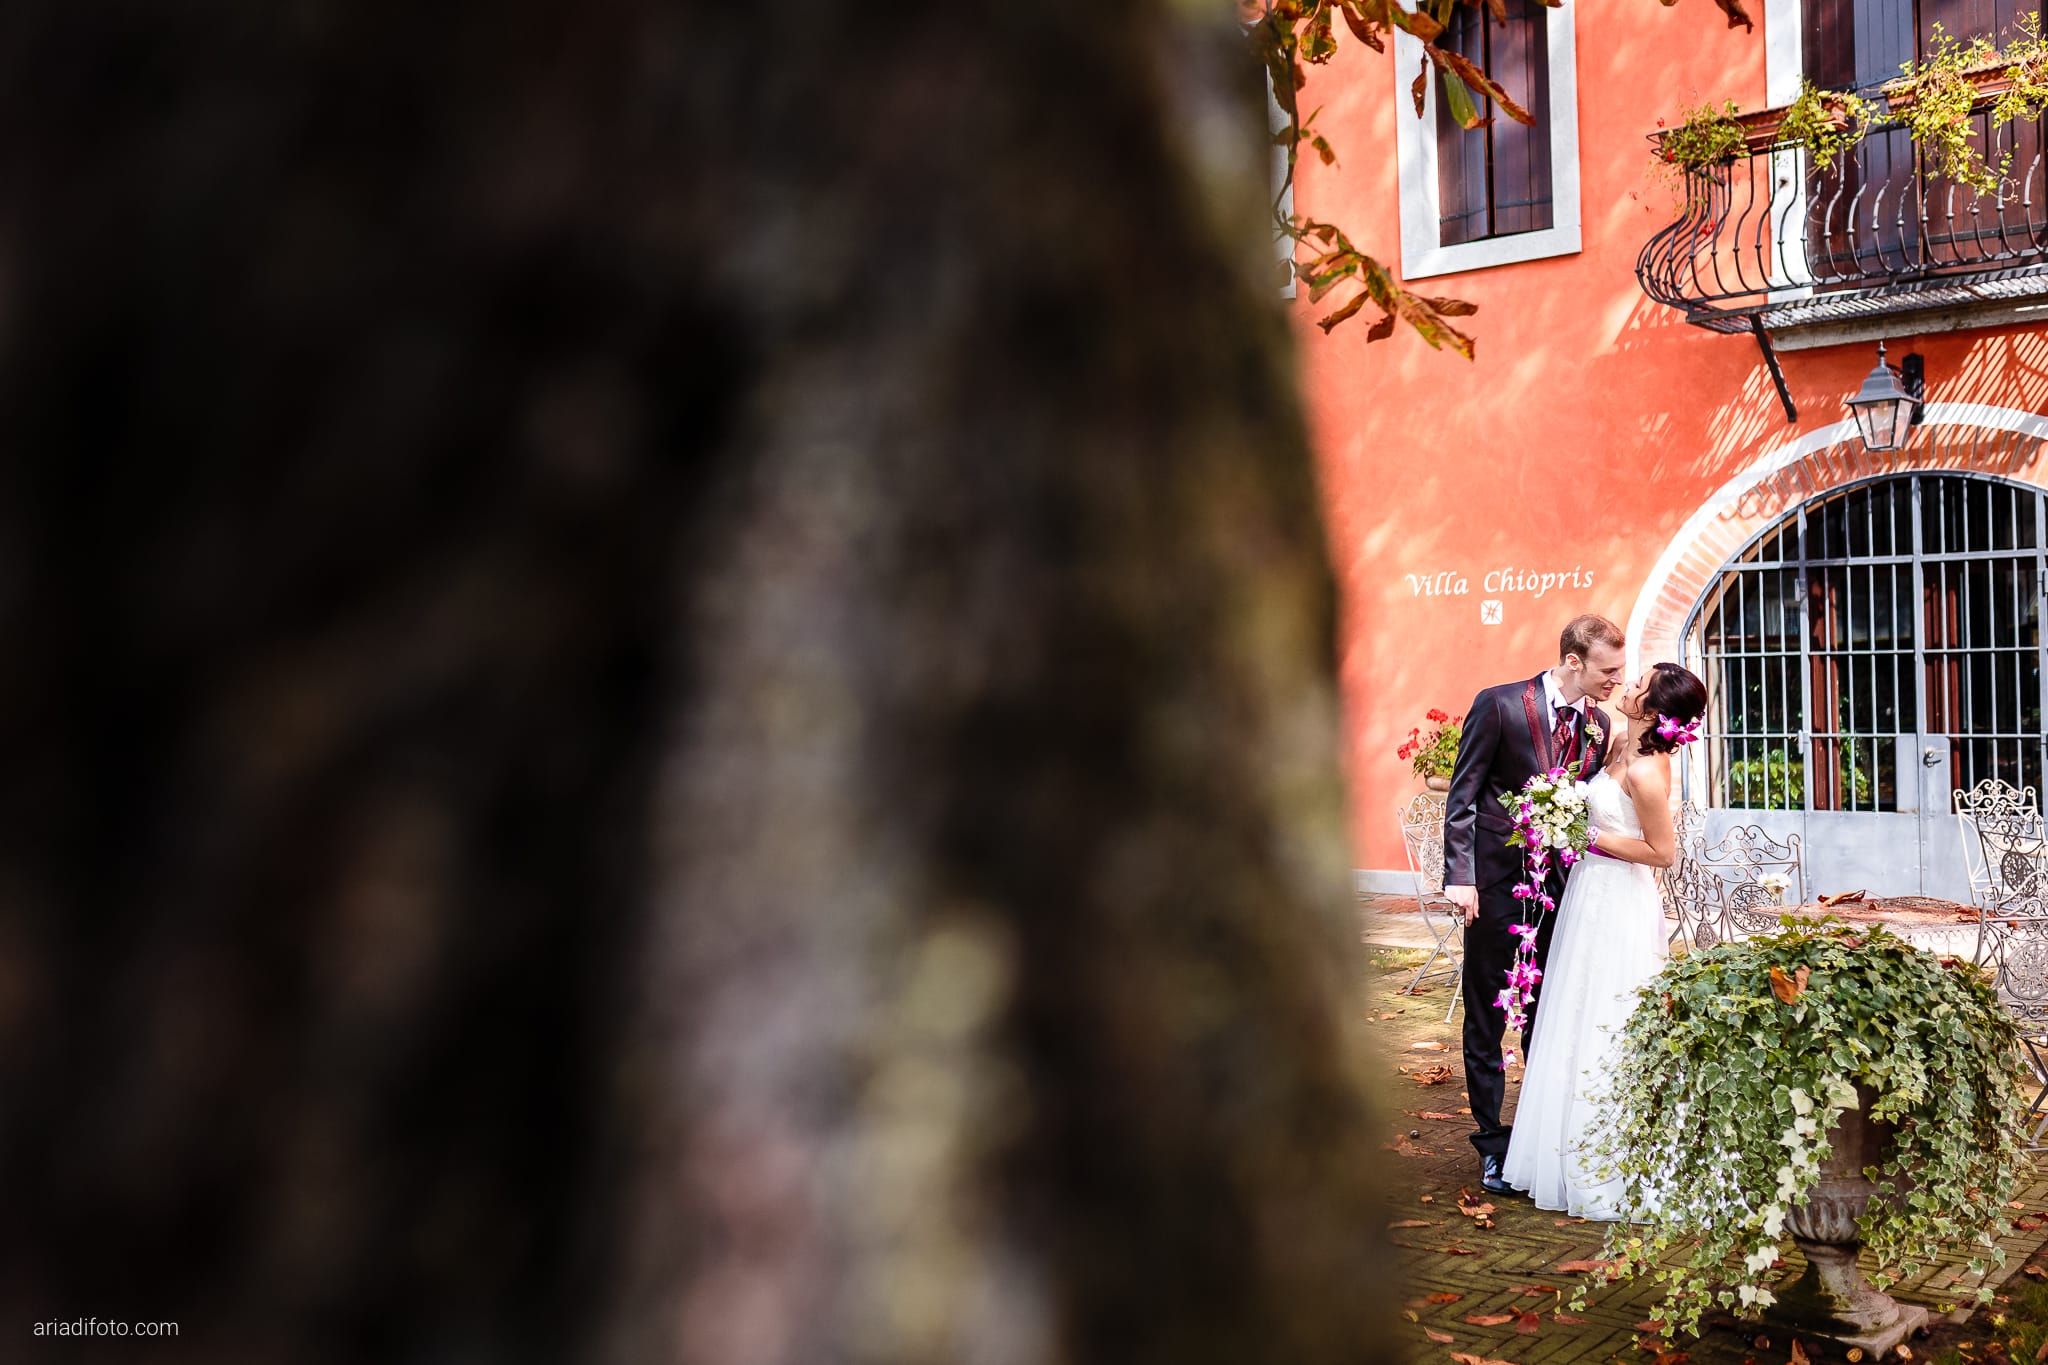 Dorella Stefano matrimonio Cormons Villa Chiopris Udine ritratti sposi